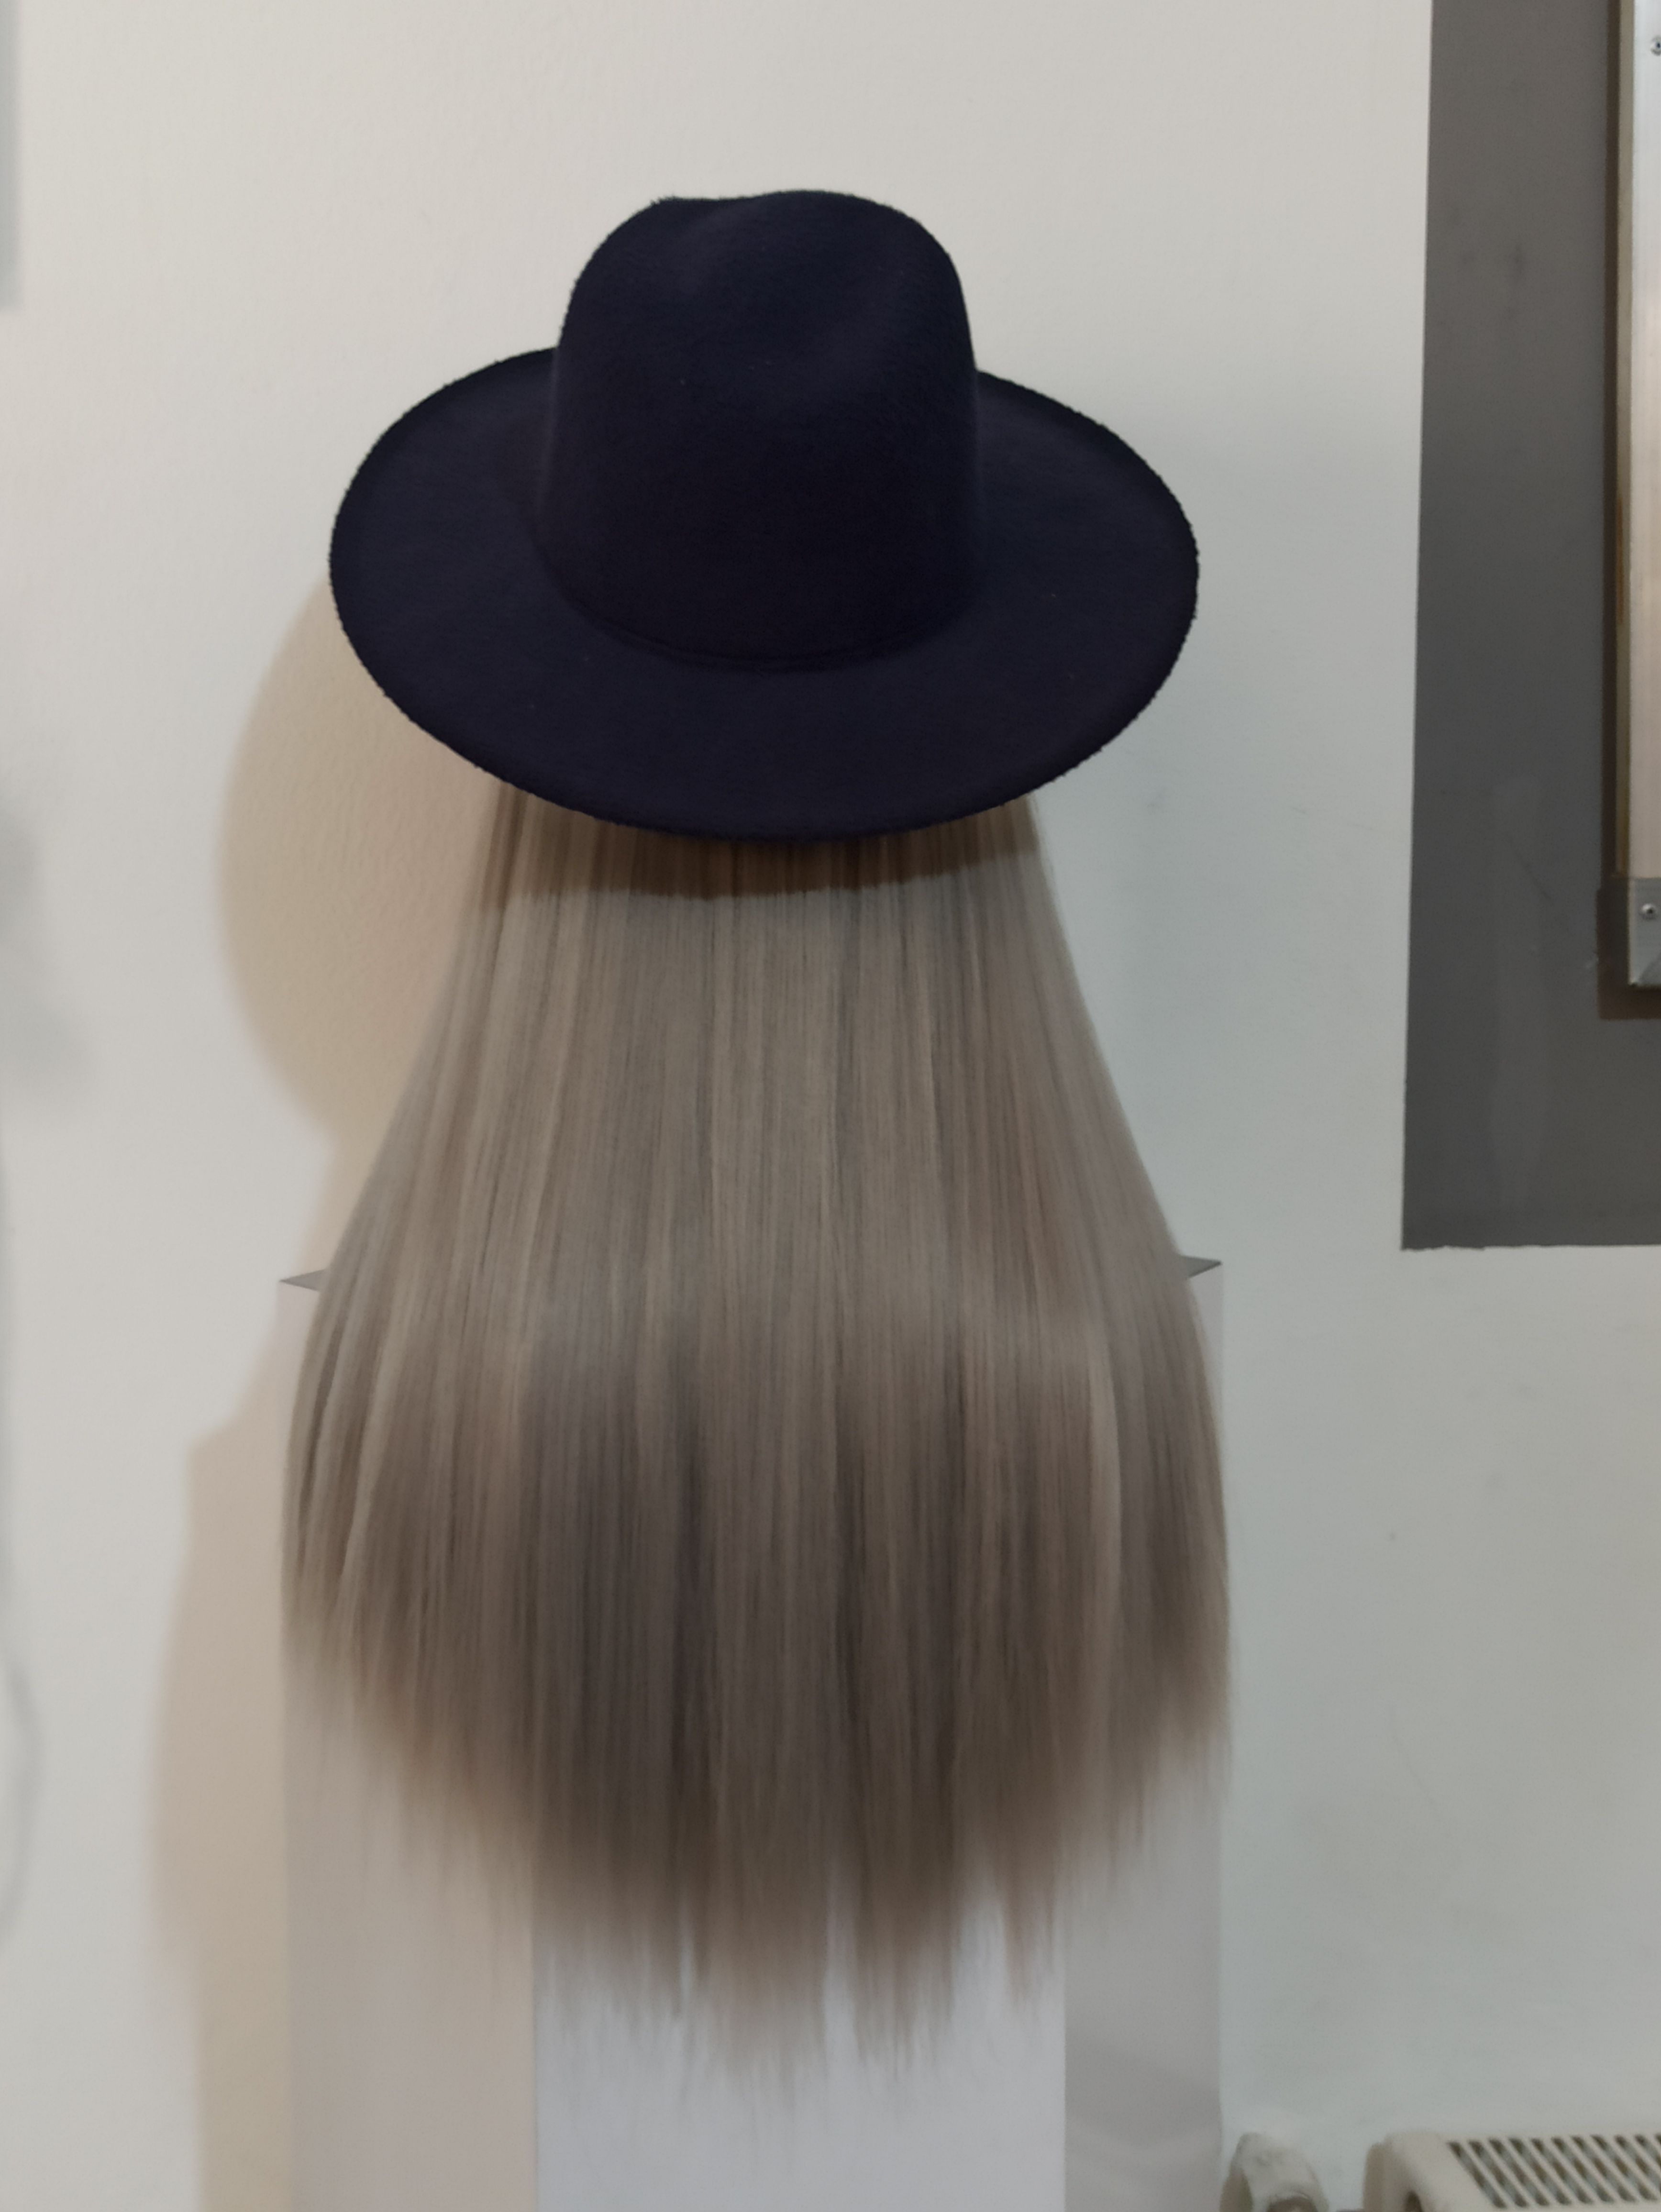 ویگ هت مشکی با موی بلوند دودی کد(۳۰۰۰7)